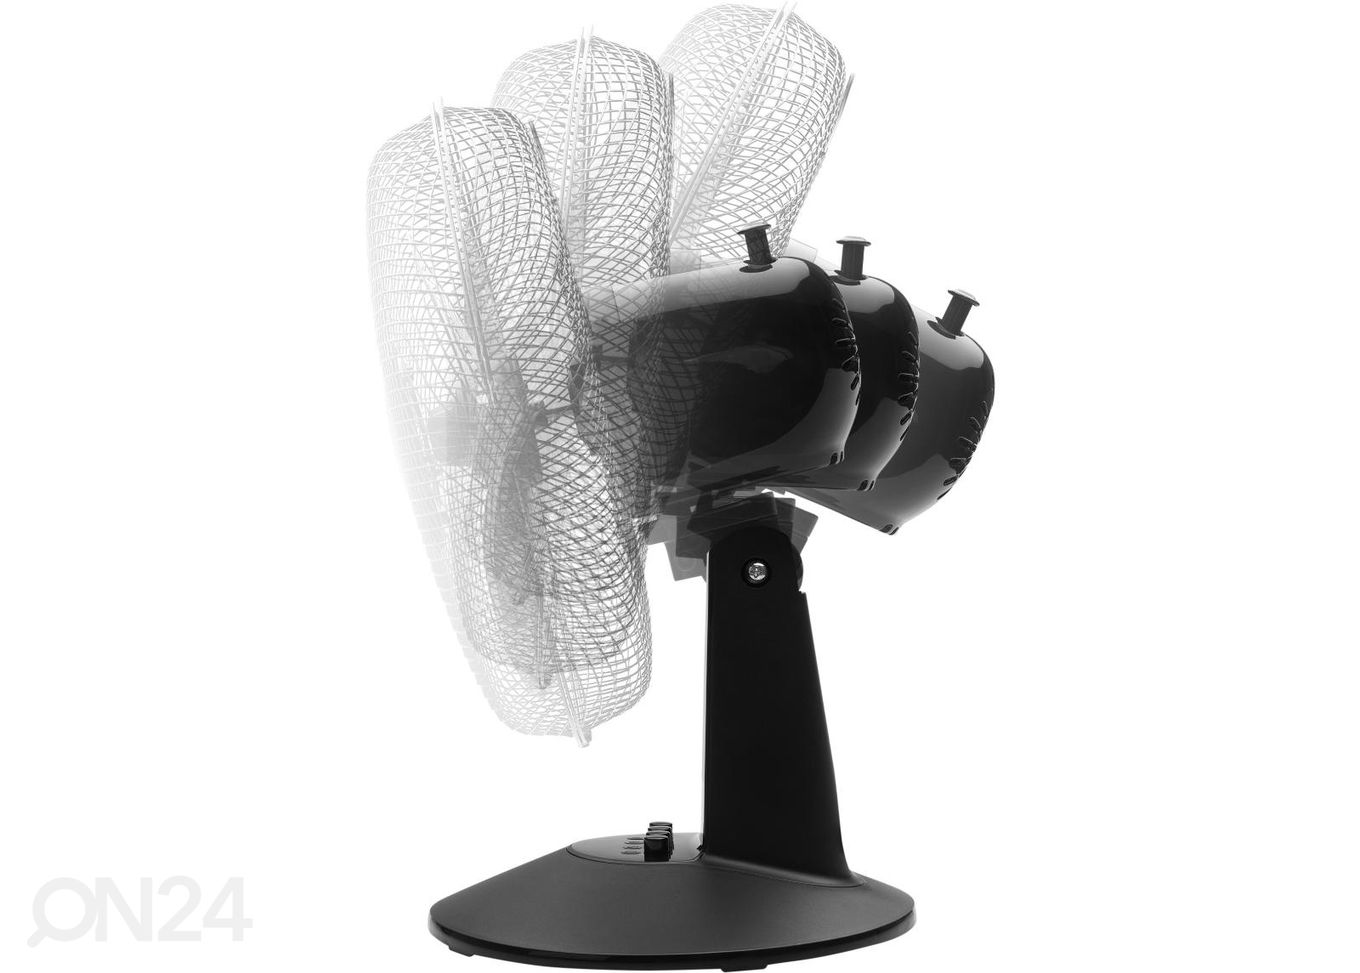 Ventilaator Sencor, must suurendatud